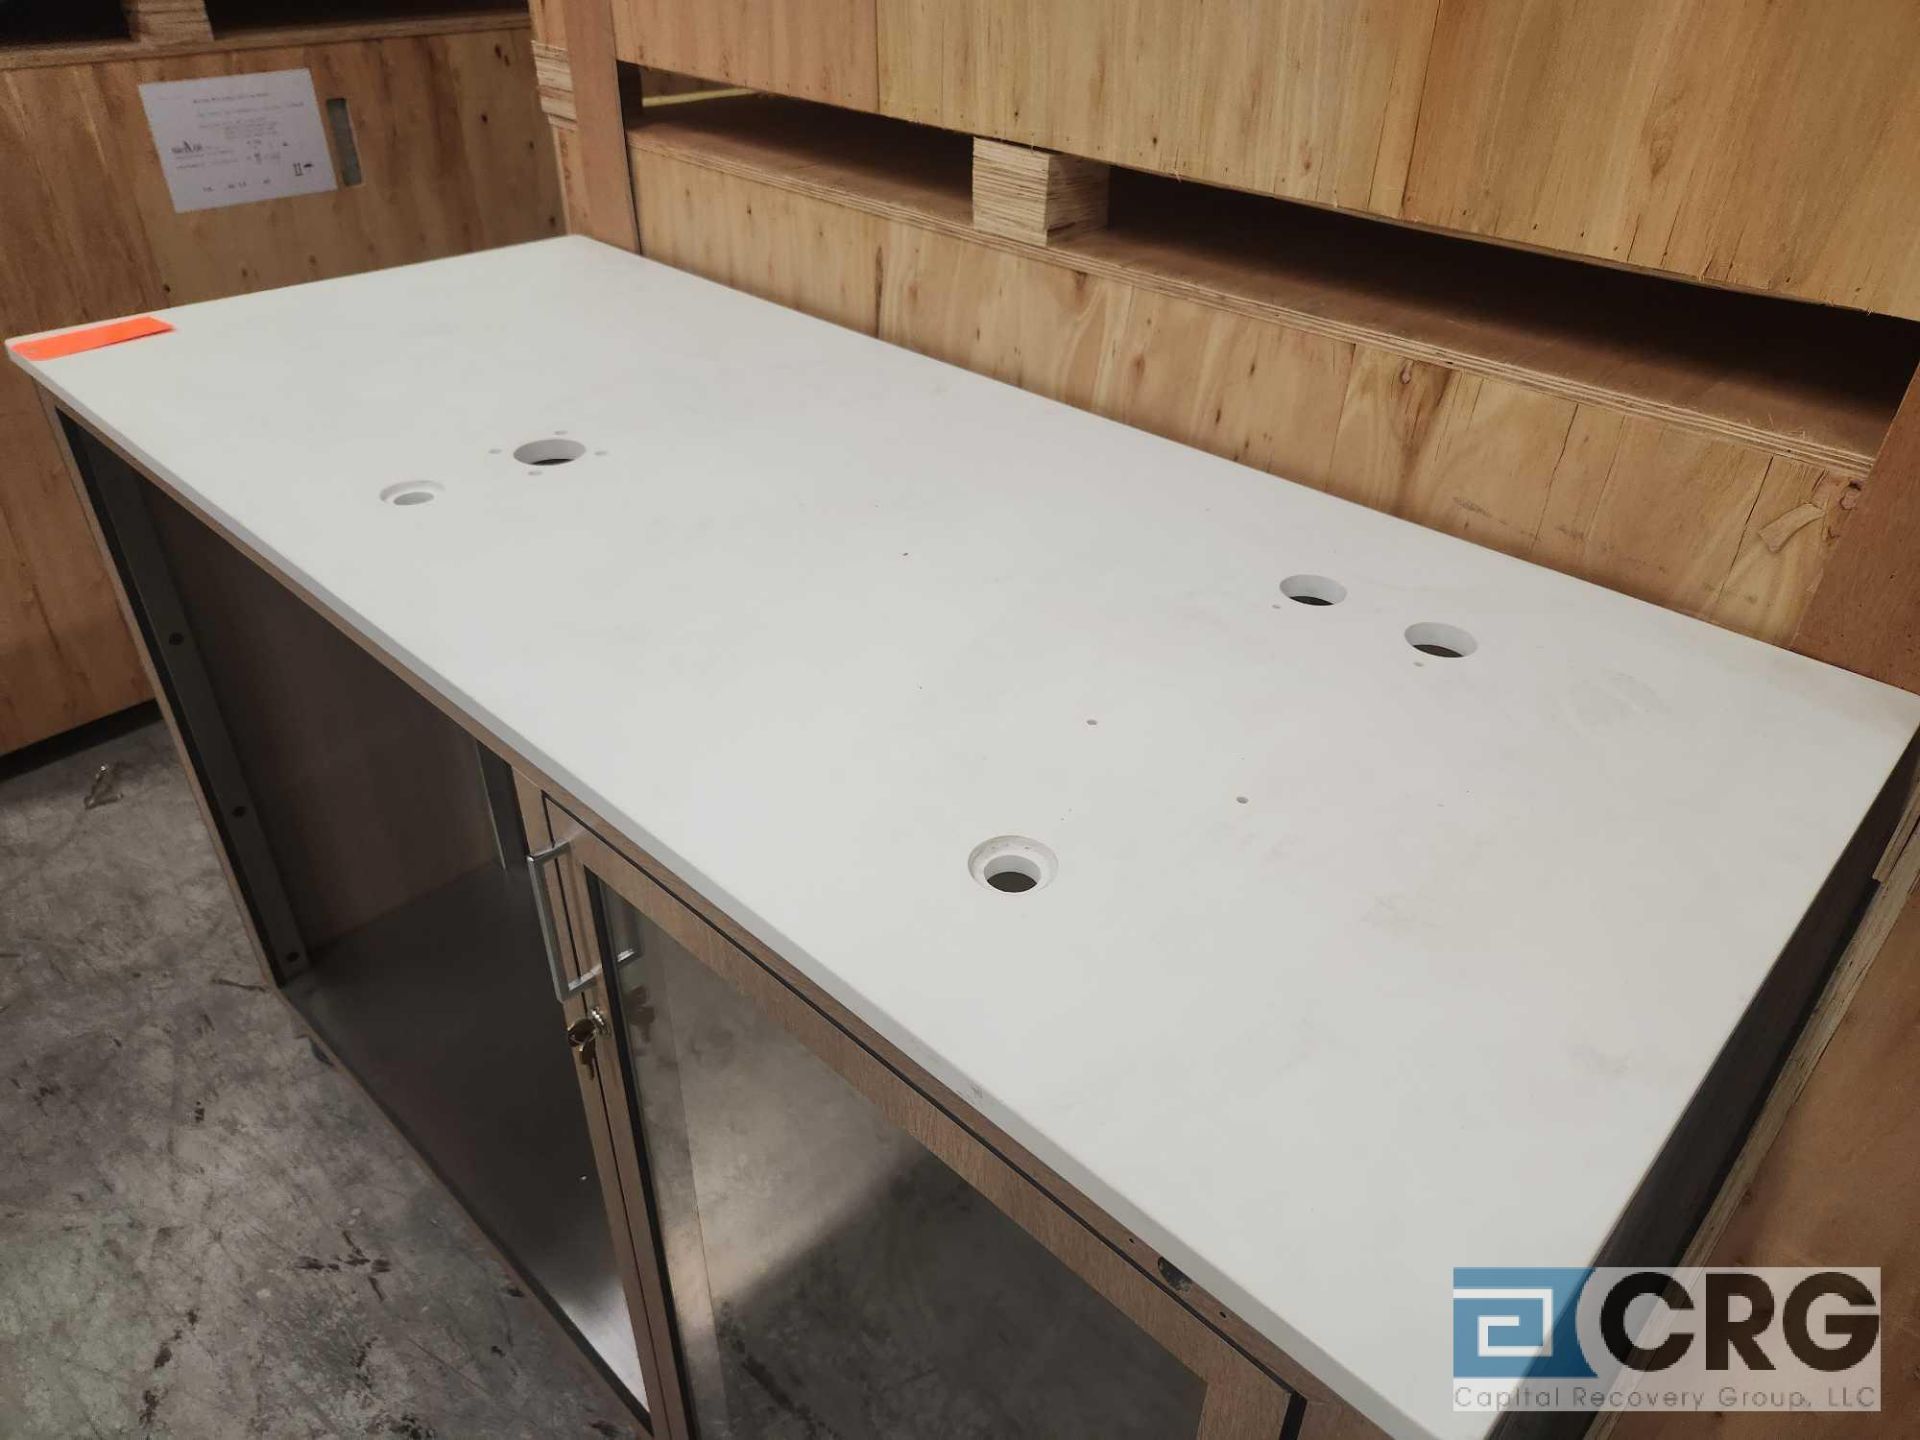 Ramler custom welded stainless steel framed portable bar serving stations - Image 2 of 3